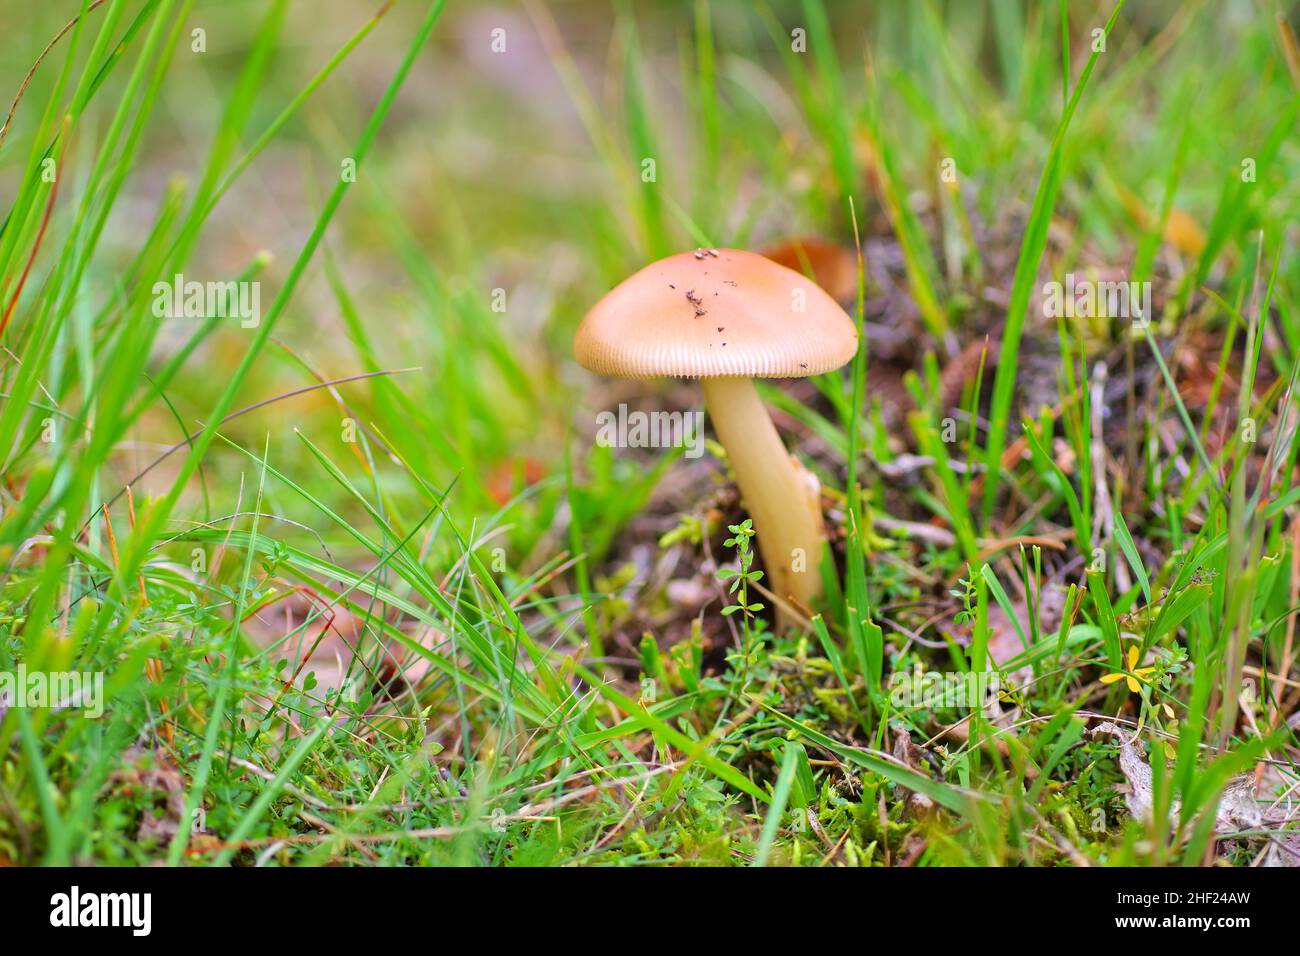 Wild mushroom in autumn forest on woodland floor Stock Photo